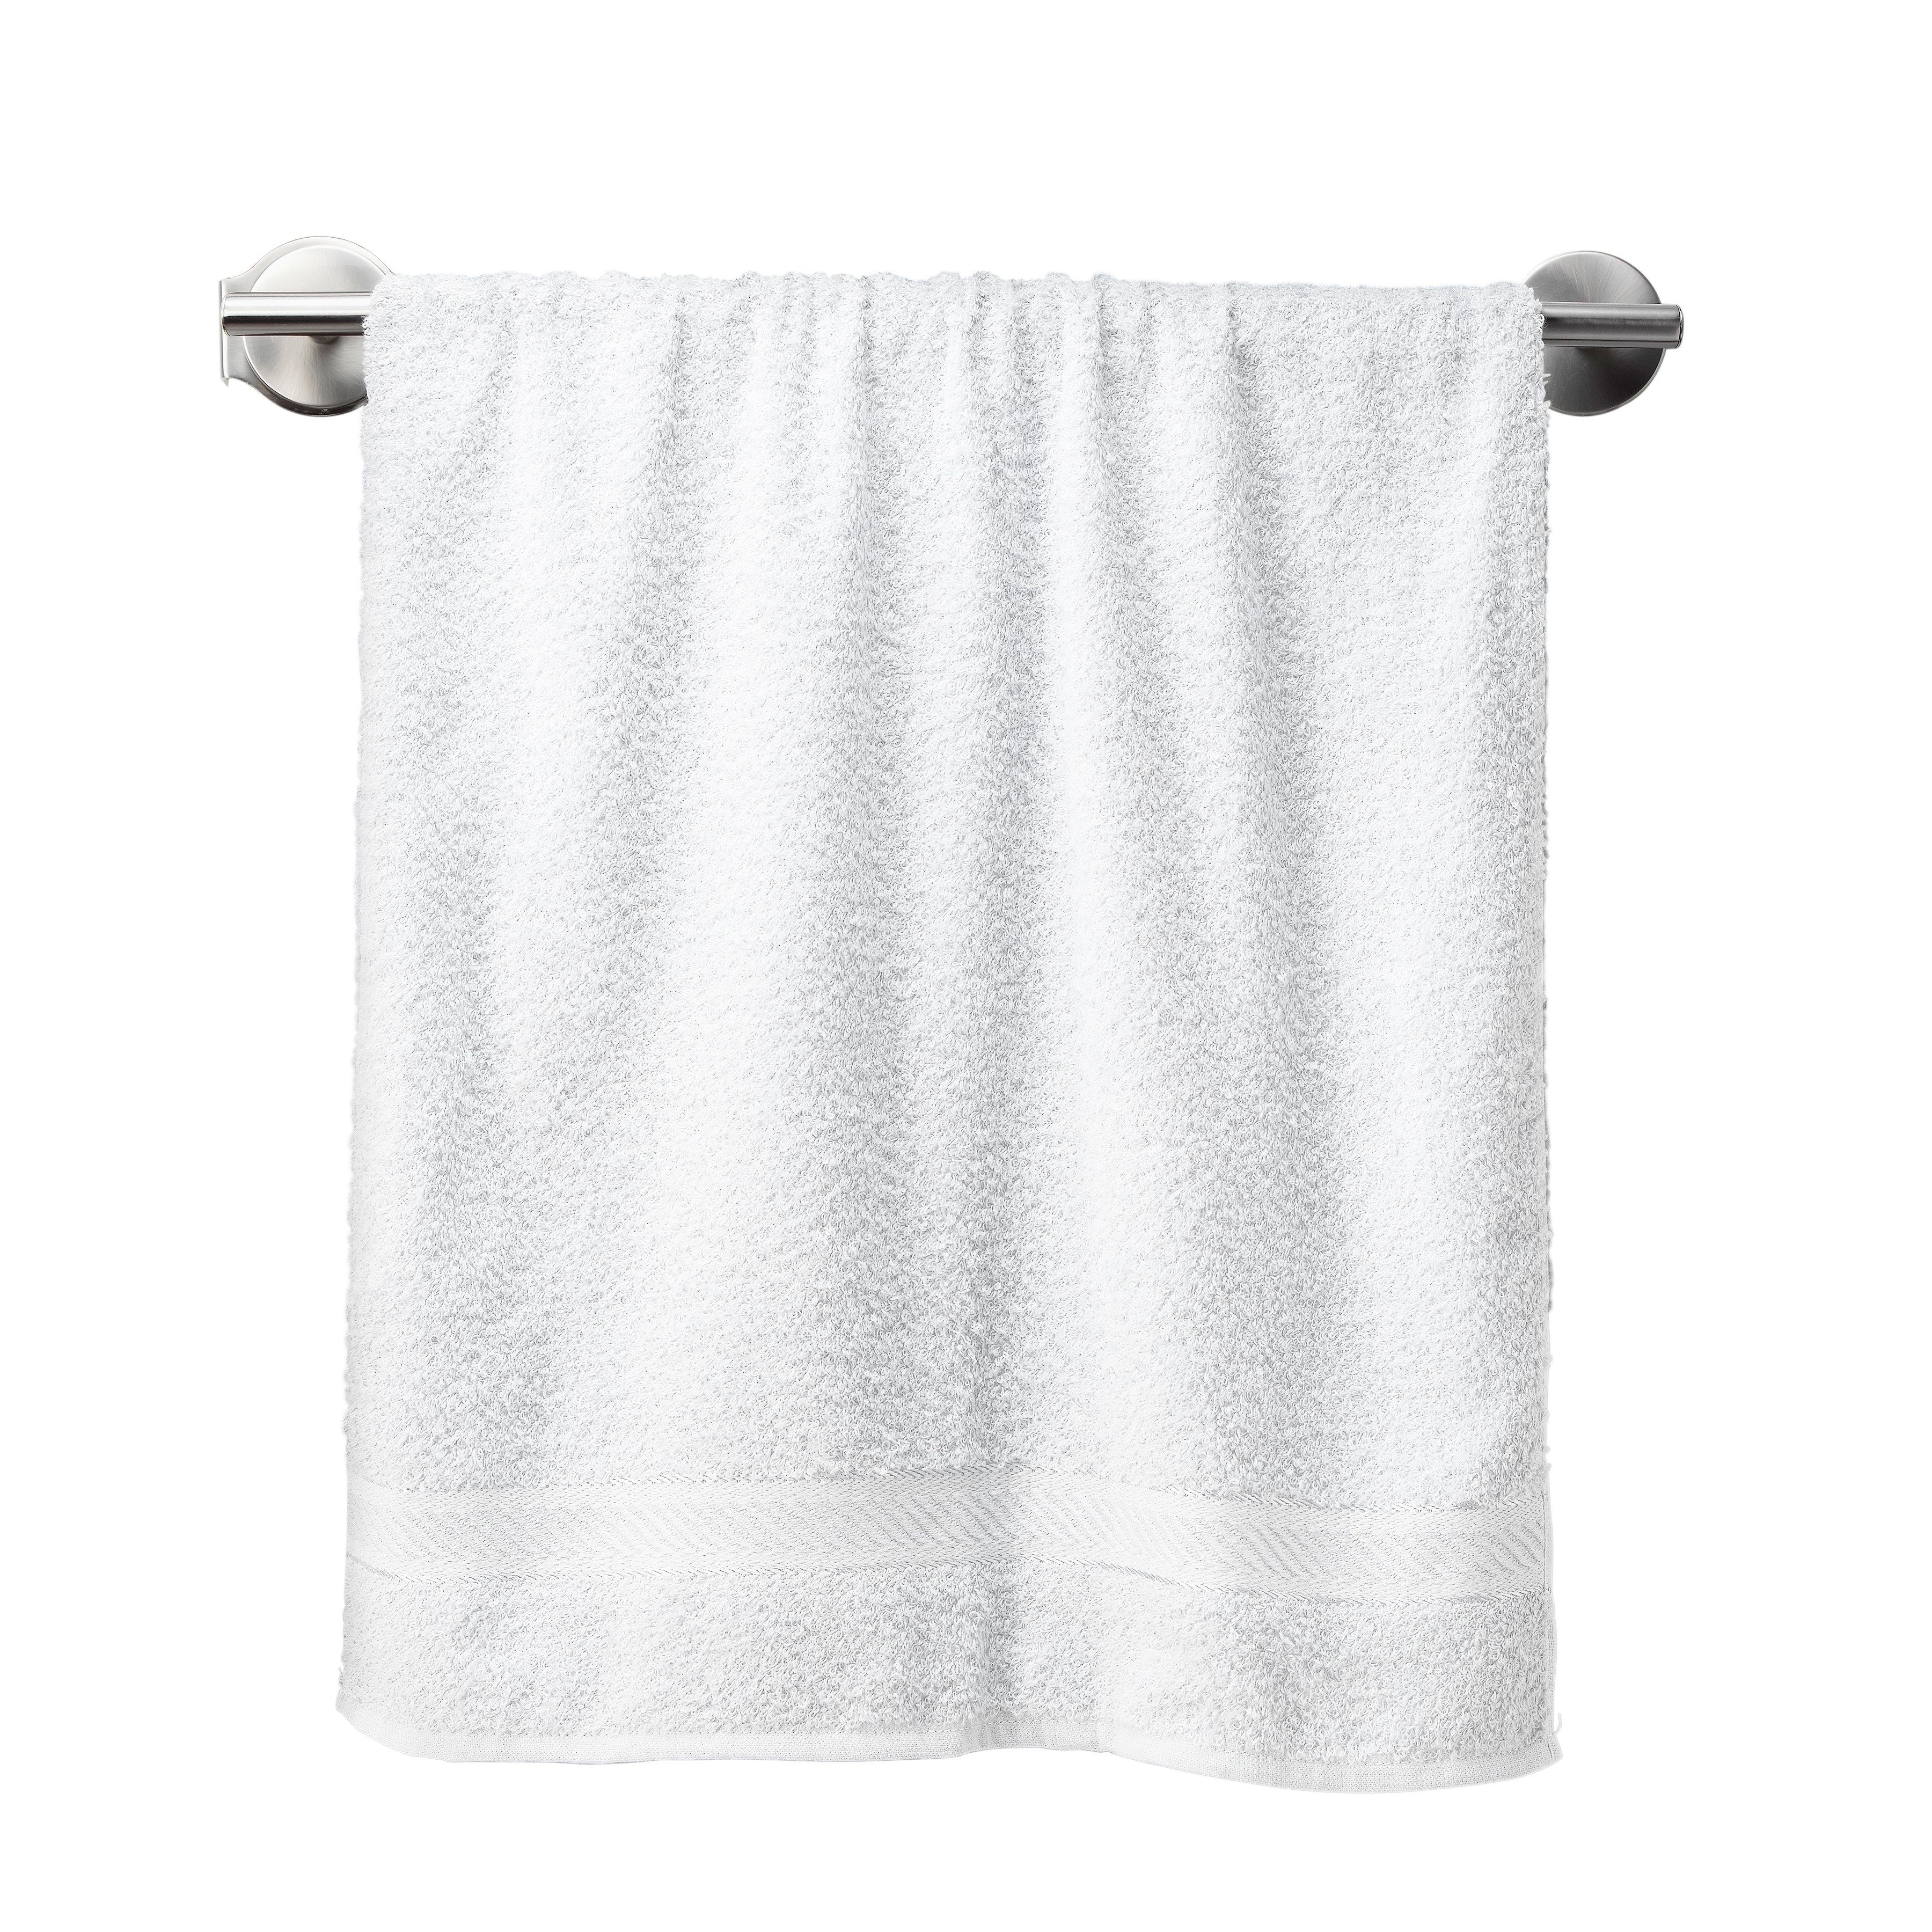 Черно белые полотенца. Полотенце висит. Полотенце на полотенцедержателе. Белое полотенце висит. Штанга для полотенец белая.